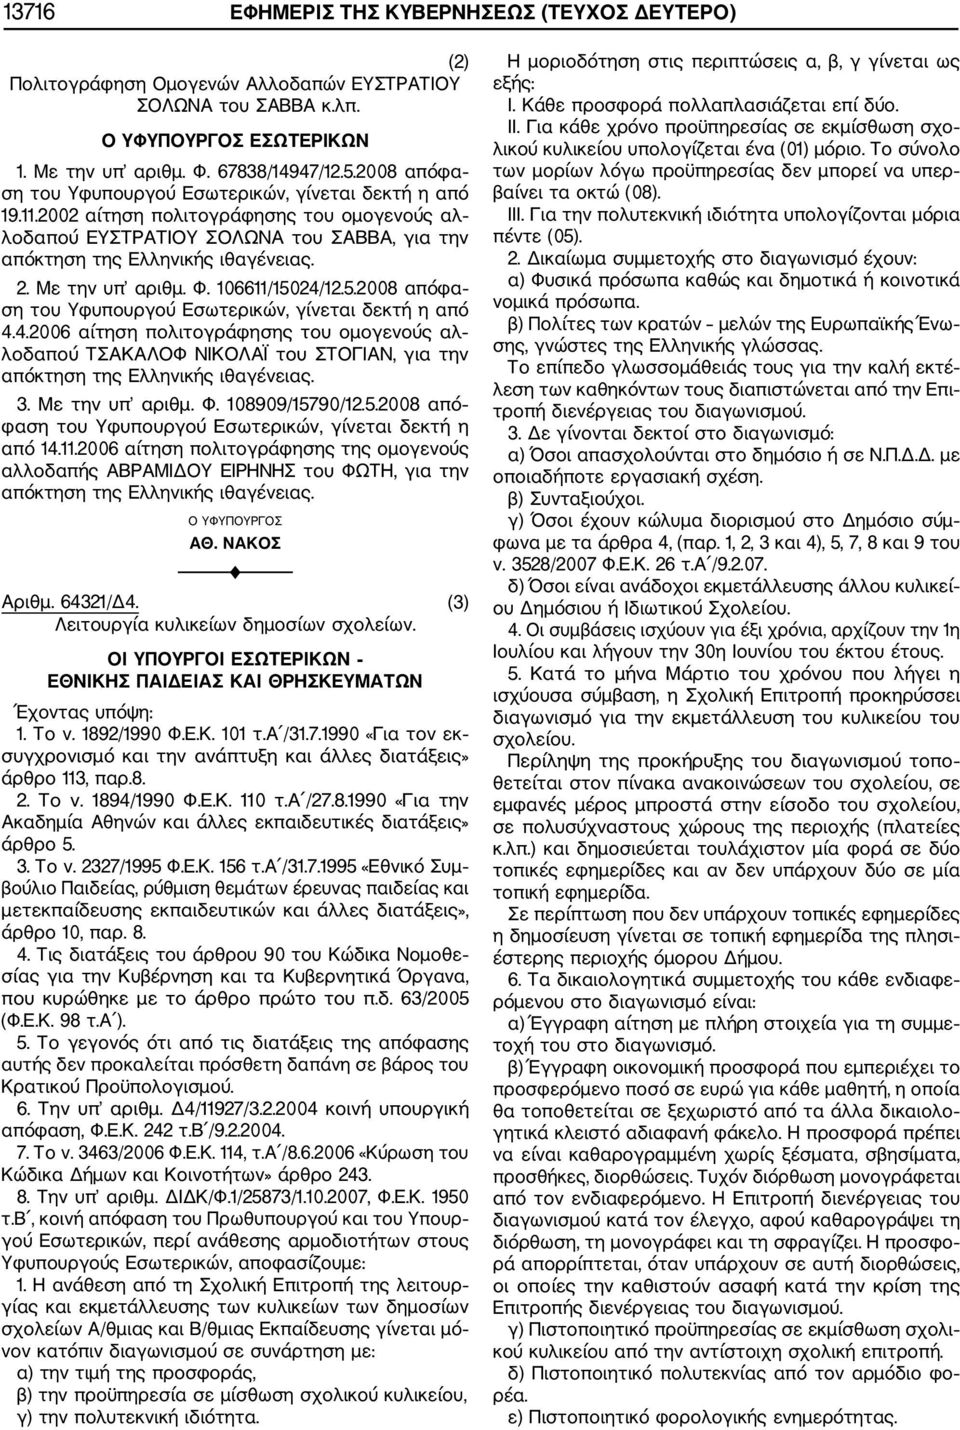 Με την υπ αριθμ. Φ. 106611/15024/12.5.2008 απόφα ση του Υφυπουργού Εσωτερικών, γίνεται δεκτή η από 4.4.2006 αίτηση πολιτογράφησης του ομογενούς αλ λοδαπού ΤΣΑΚΑΛΟΦ ΝΙΚΟΛΑΪ του ΣΤΟΓΙΑΝ, για την απόκτηση της Ελληνικής ιθαγένειας.